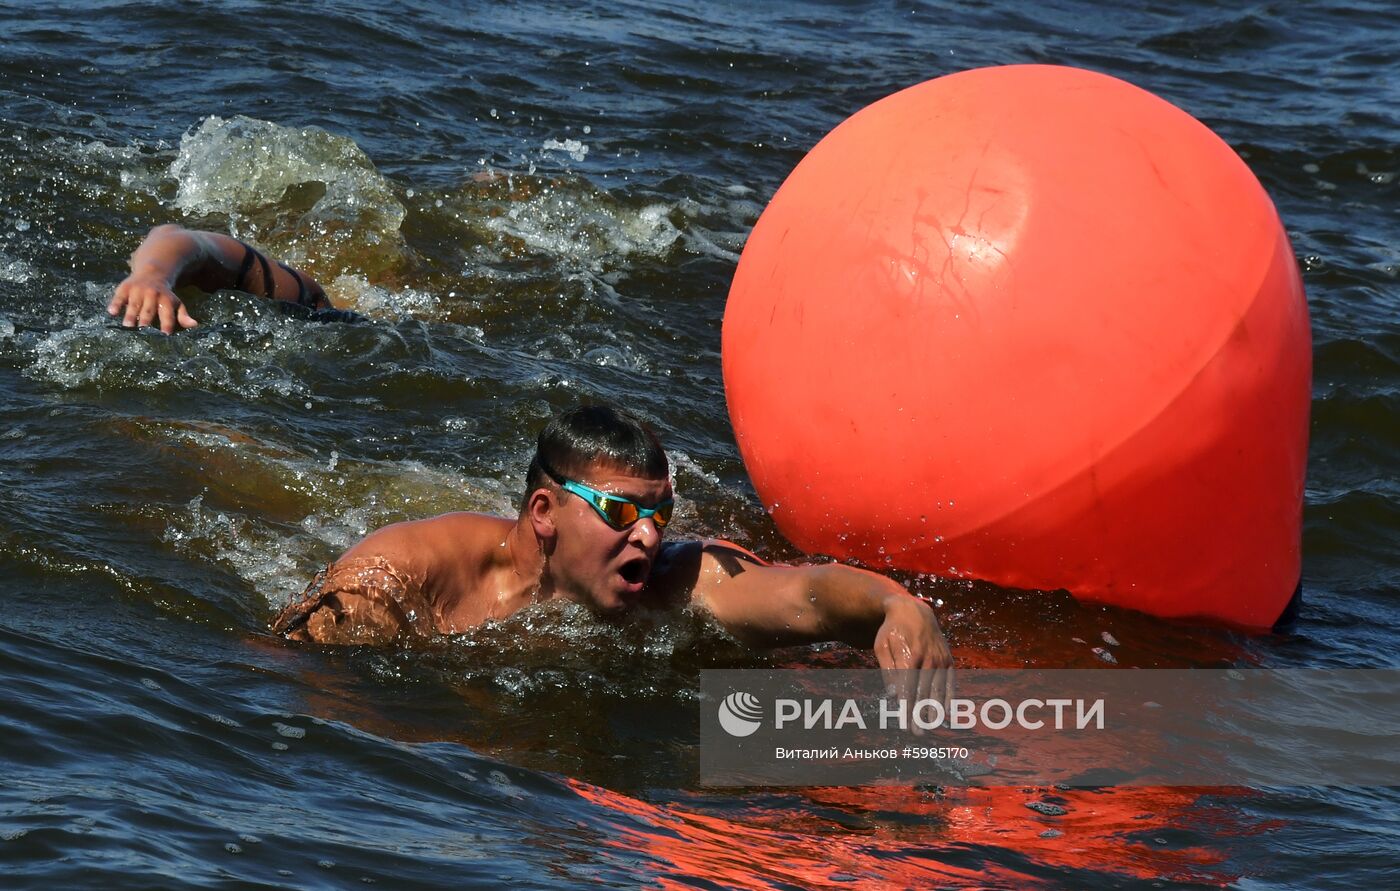 Кубок России по плаванию на открытой воде